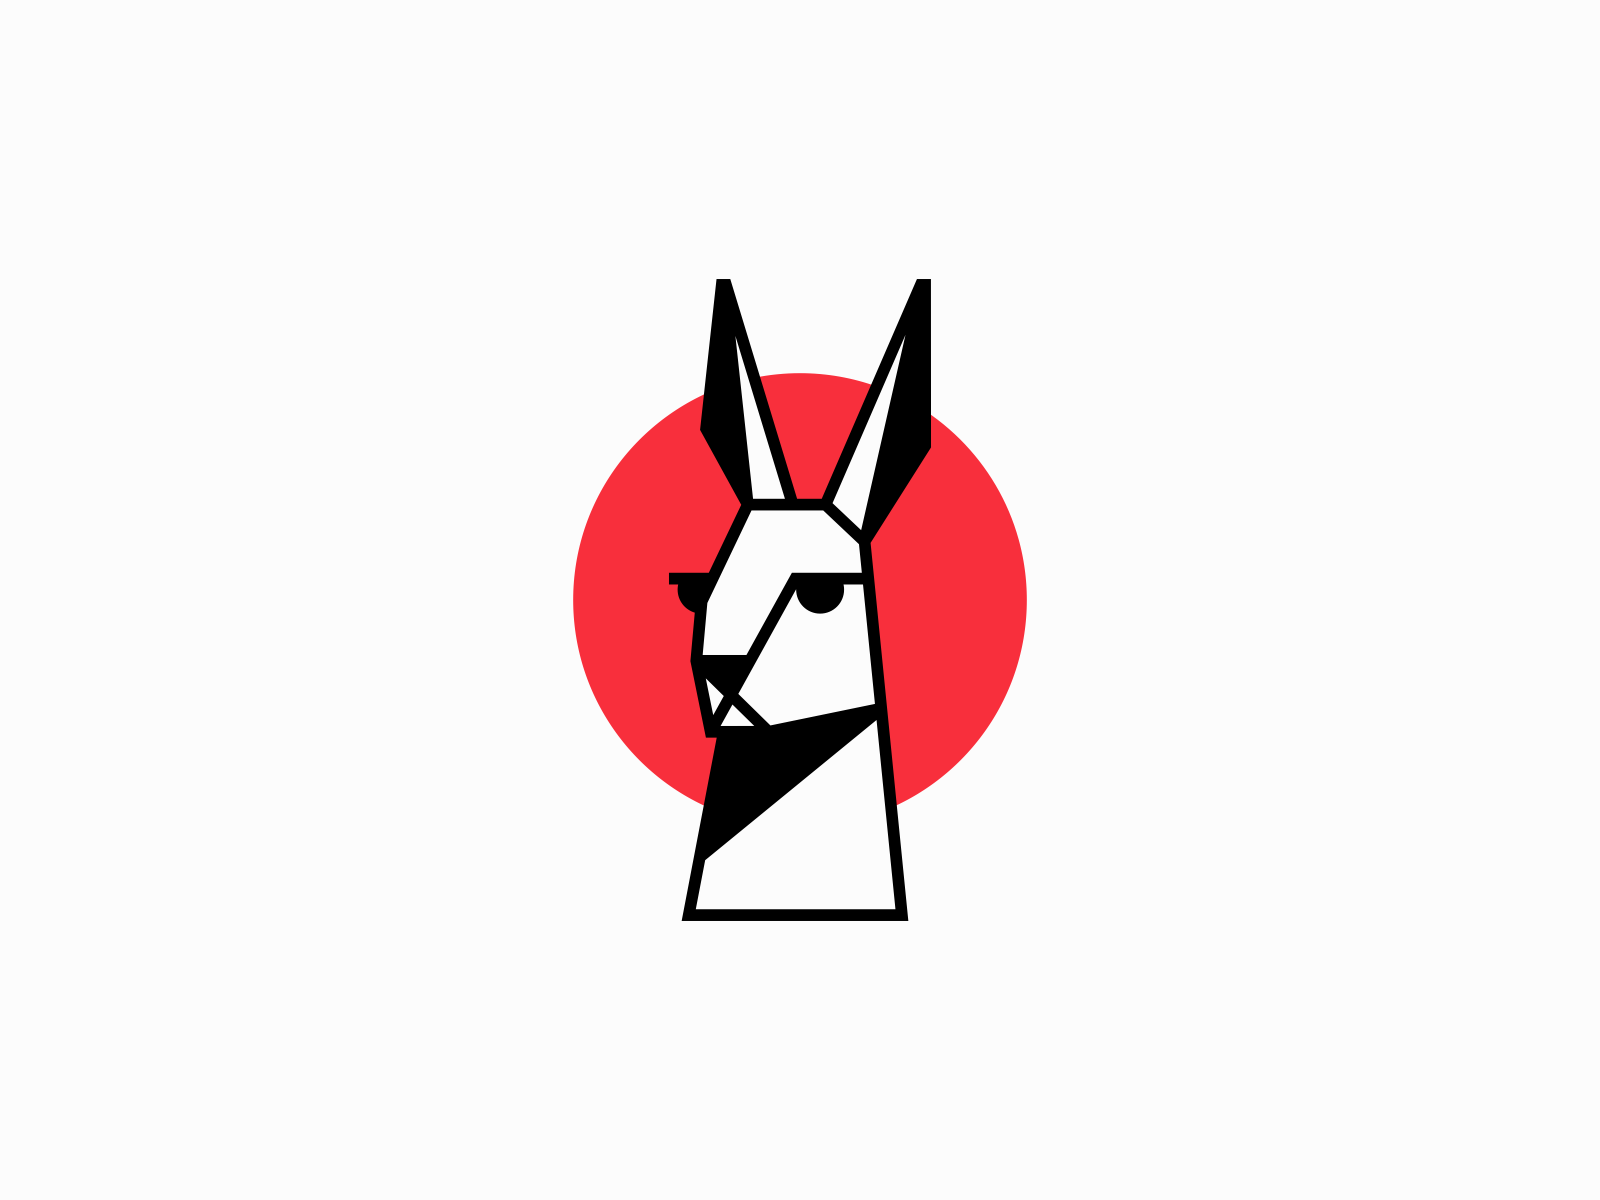 1000+ images about Rabbit Brands on Pinterest | Rabbit, Logos and ... |  Кельтские символы, Иллюстрации, Логотип животные